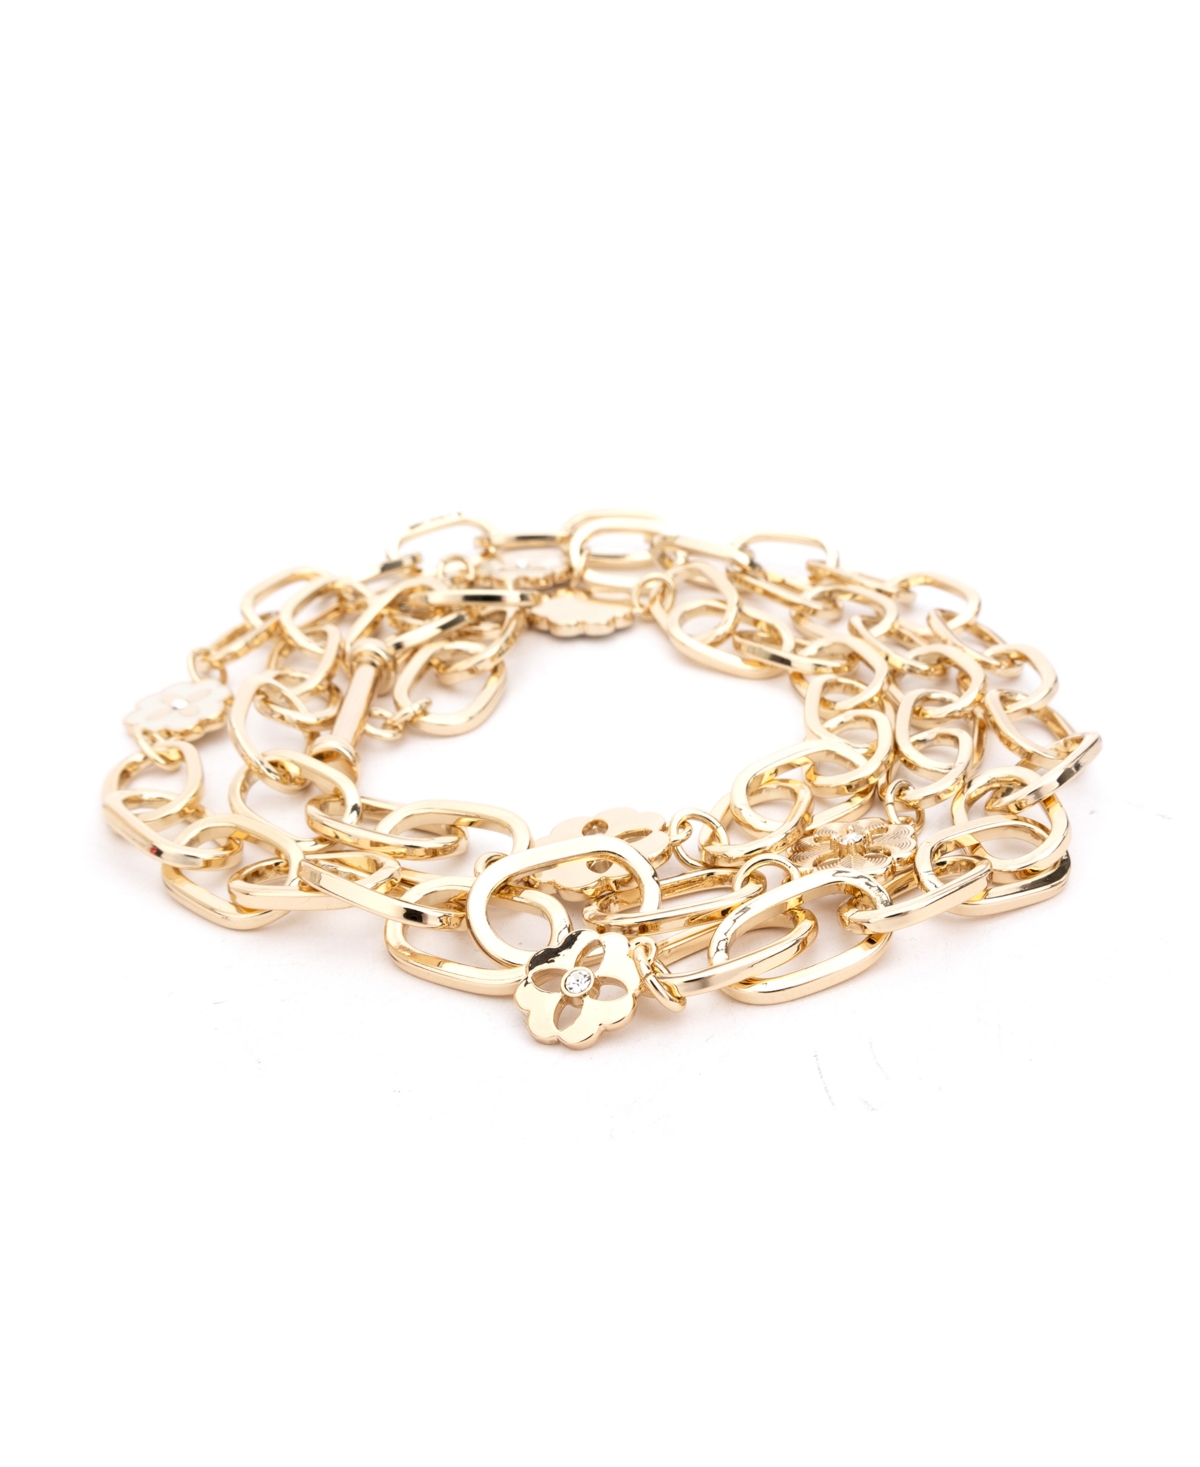 Women's Enamel Chain Belt - Pale Polished Gold